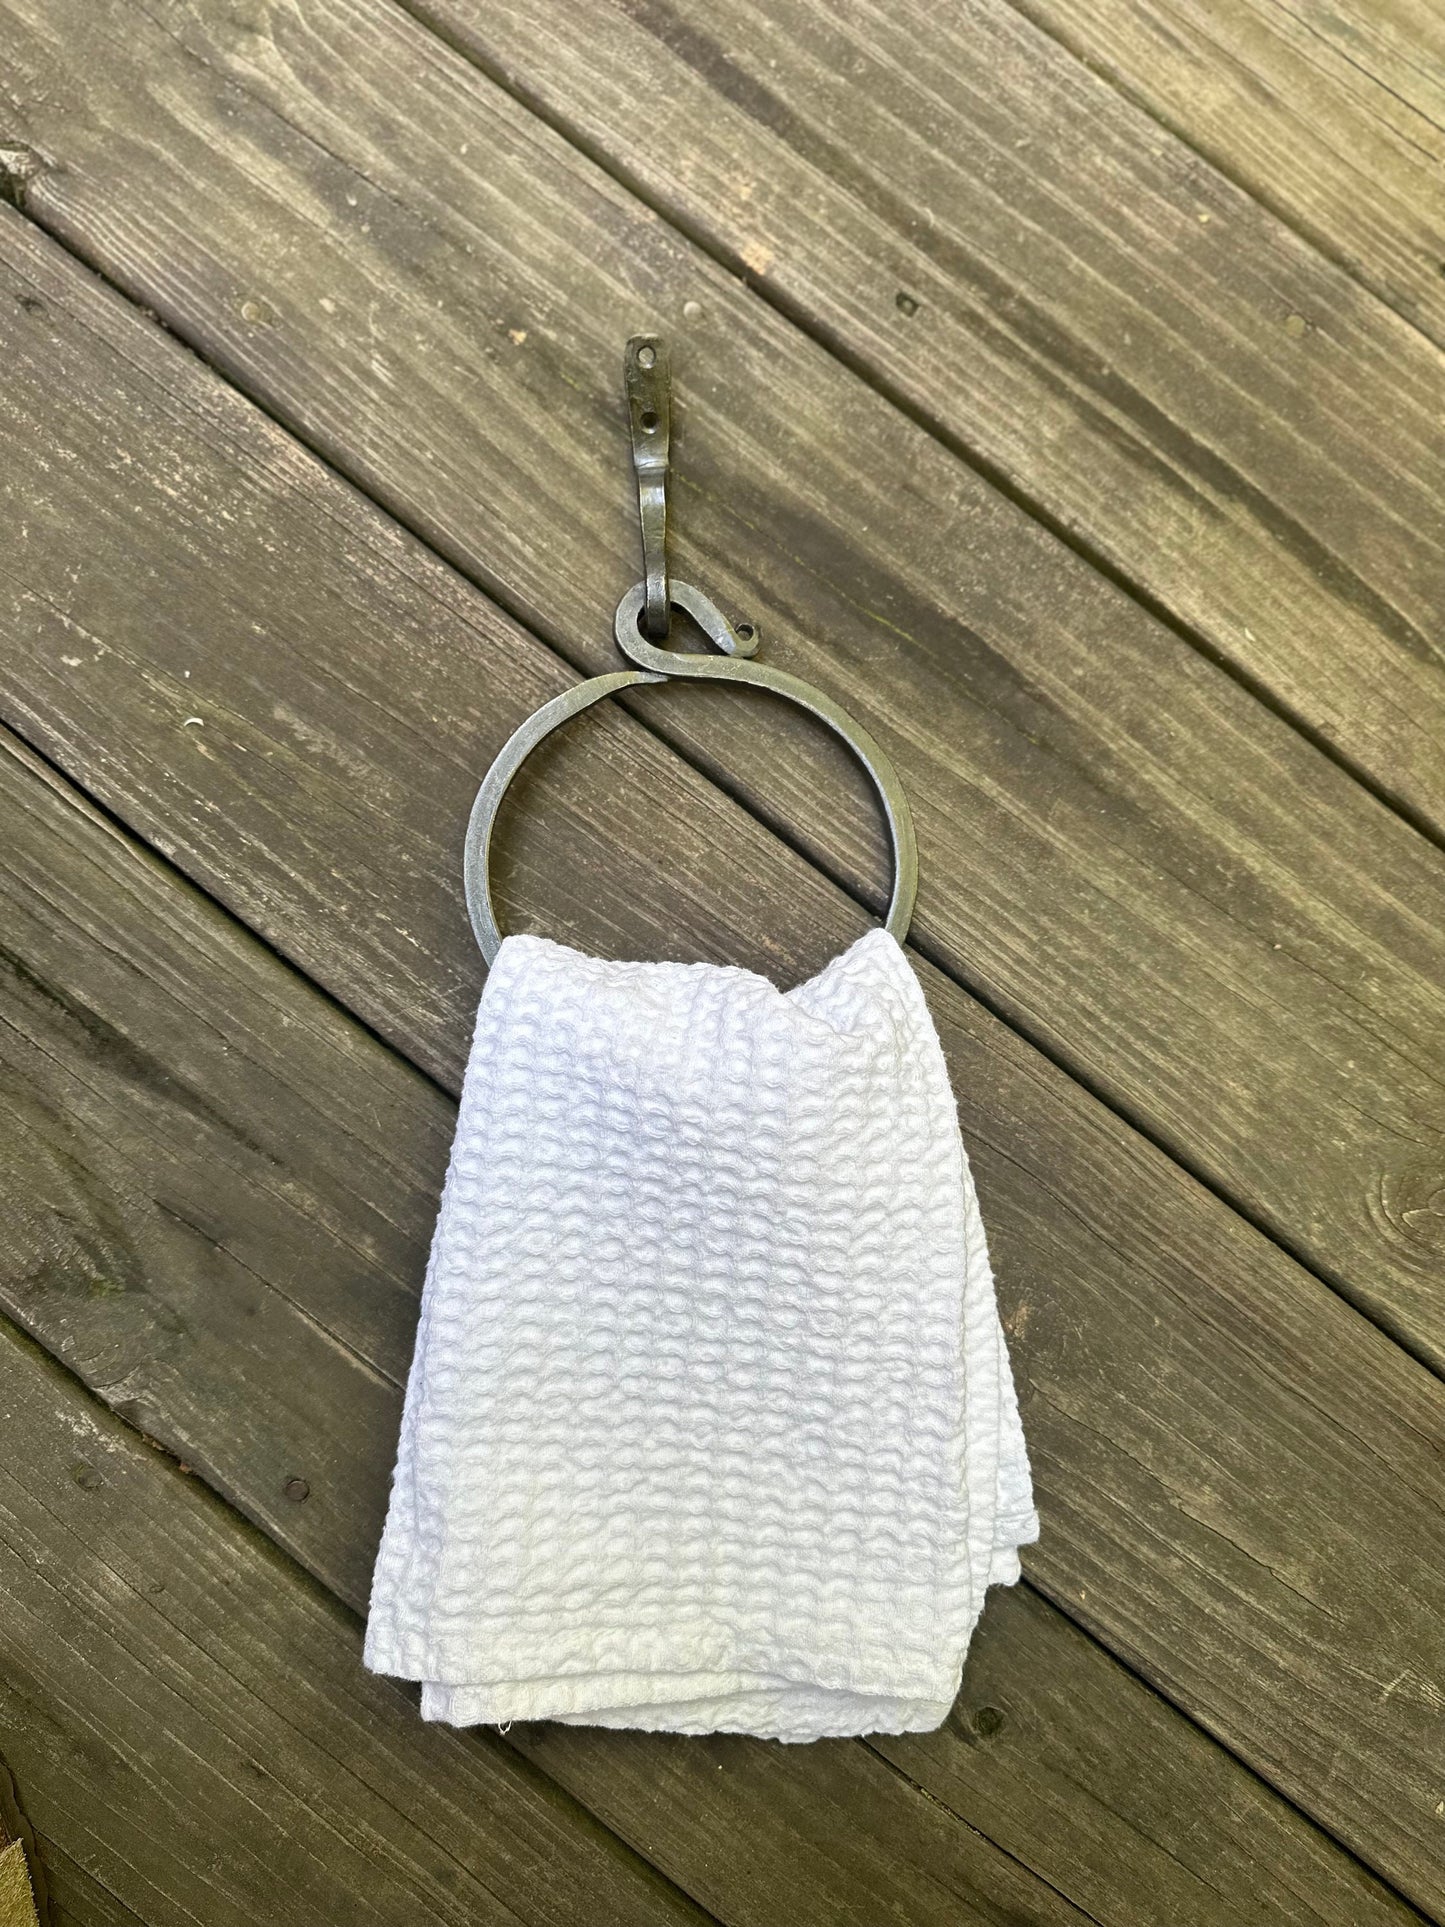 FORGED Metal Towel Ring/Towel Rack/Bathroom Decor/Metal Towel Ring/PICK COLOR/Farmhouse Bathroom/Towel Hook/Kitchen Towel Holder